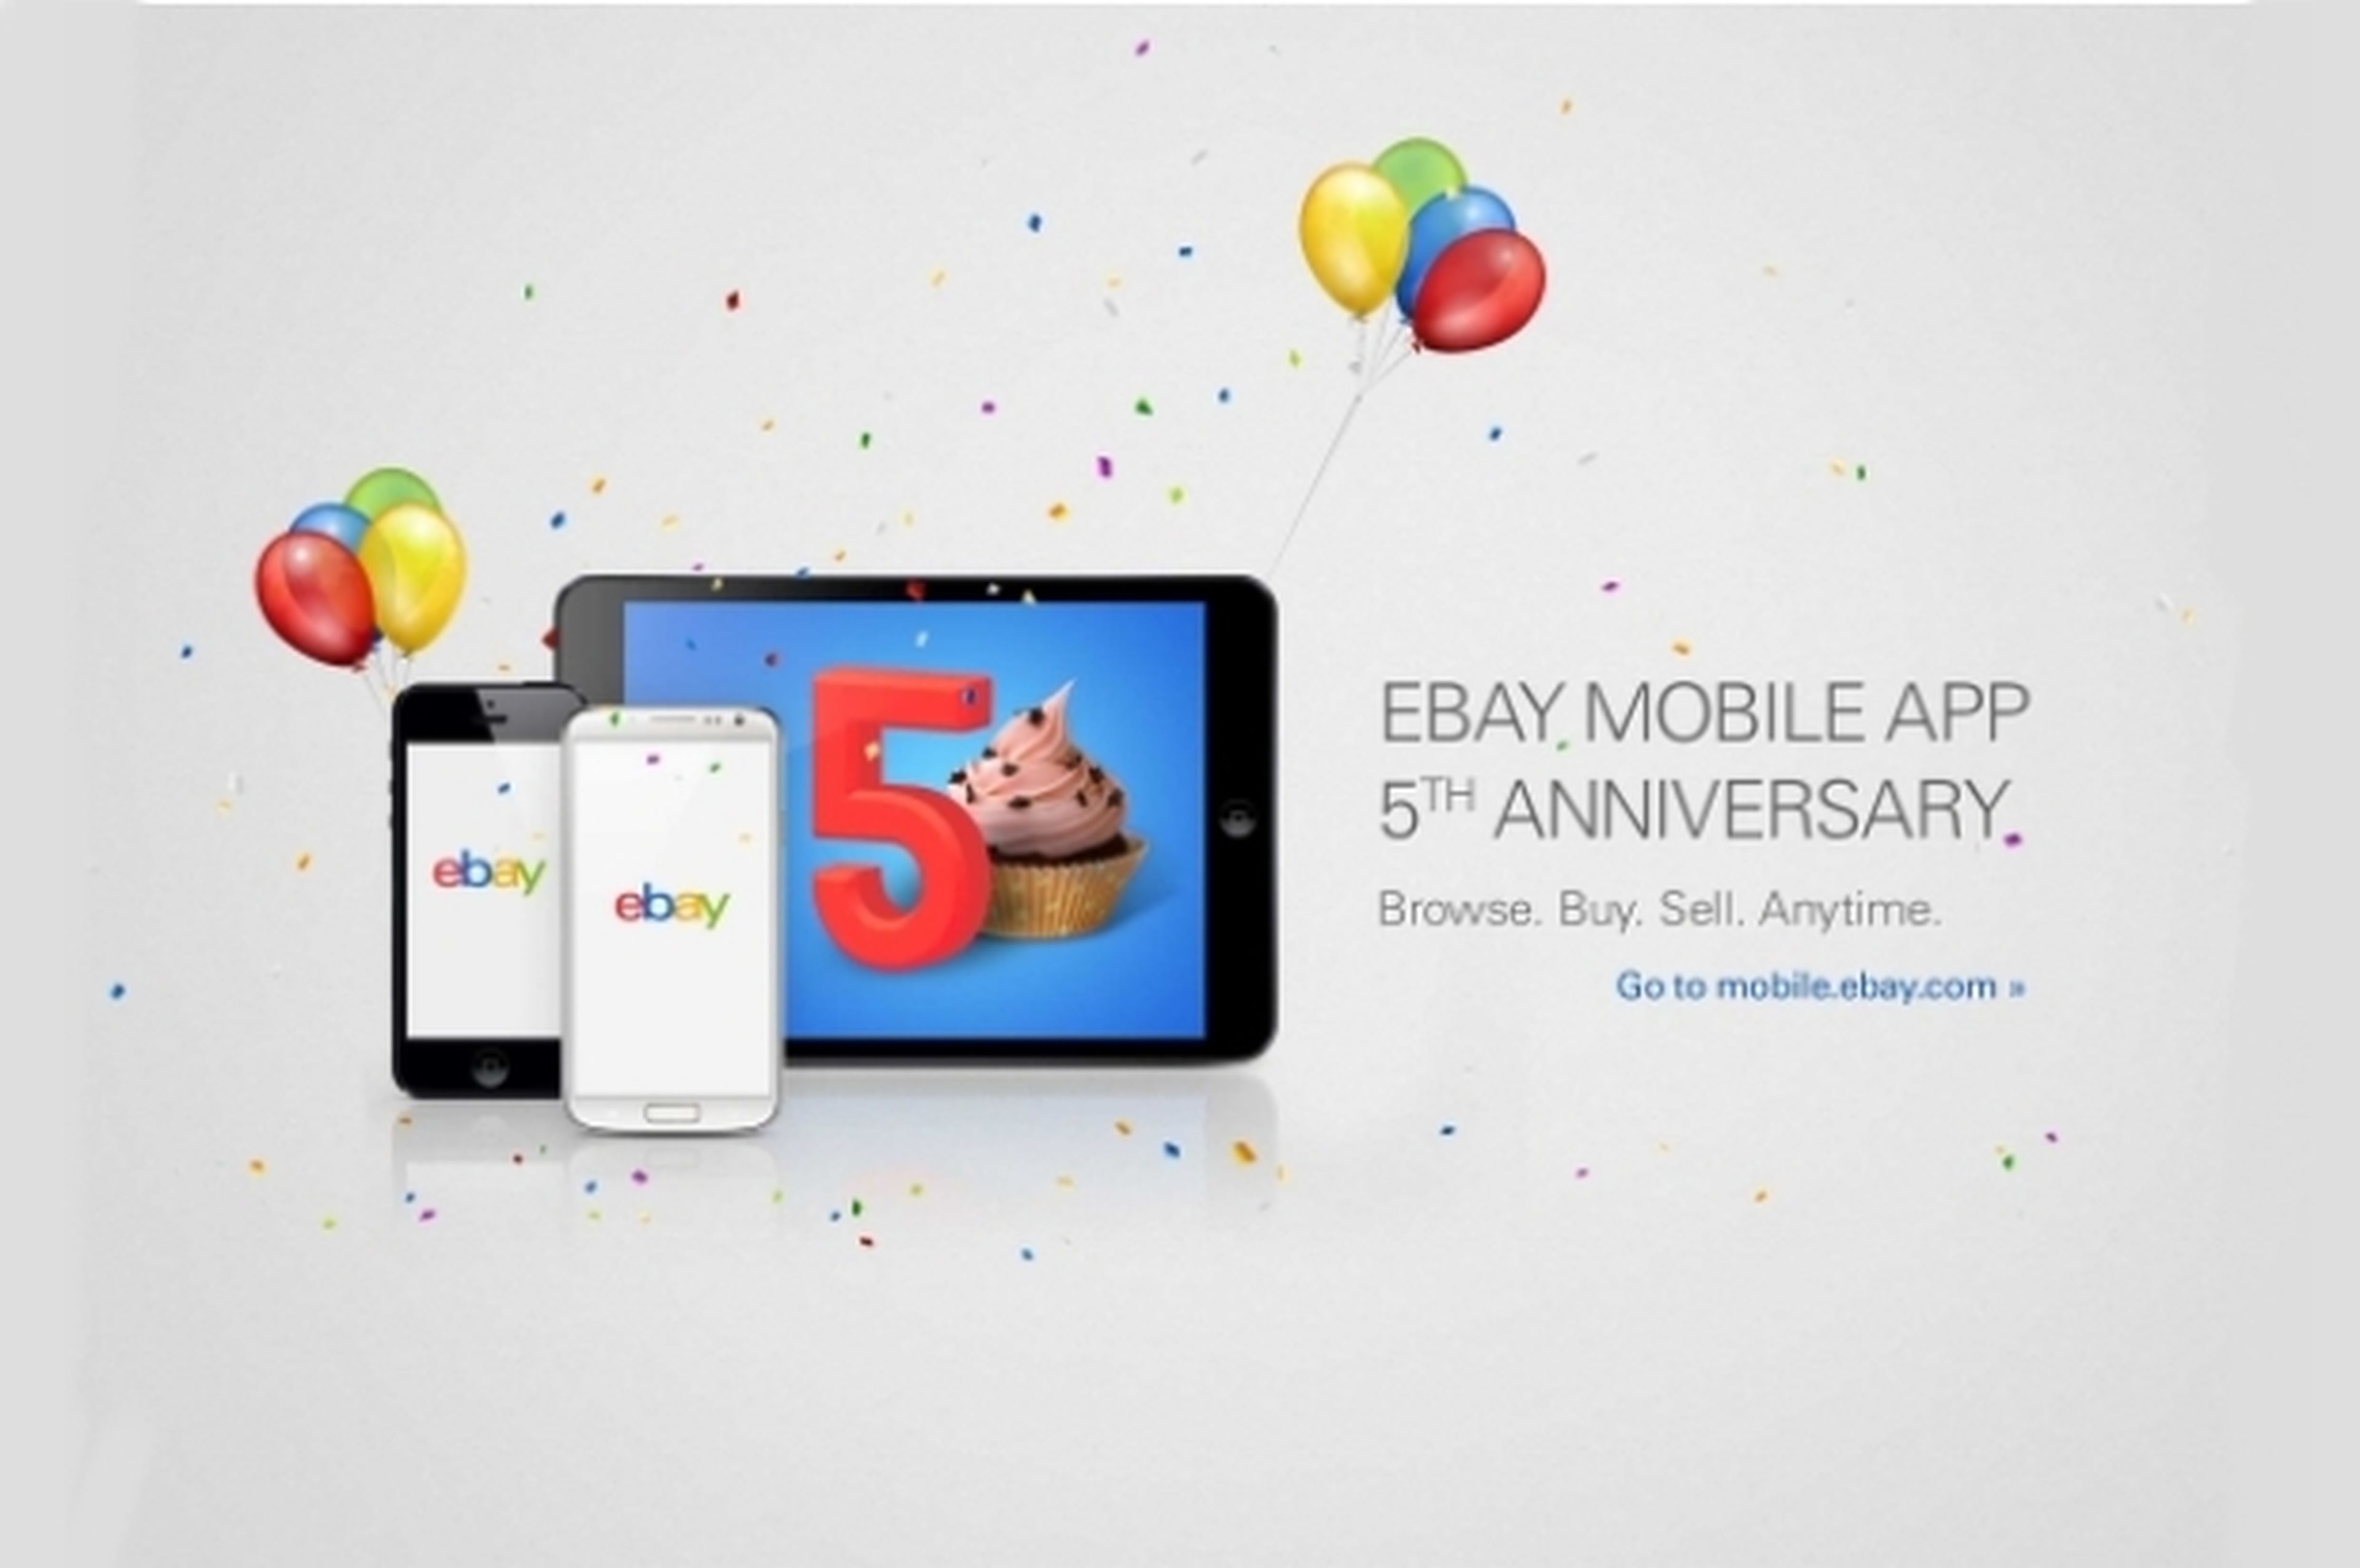 La app de ebay cumple cinco años